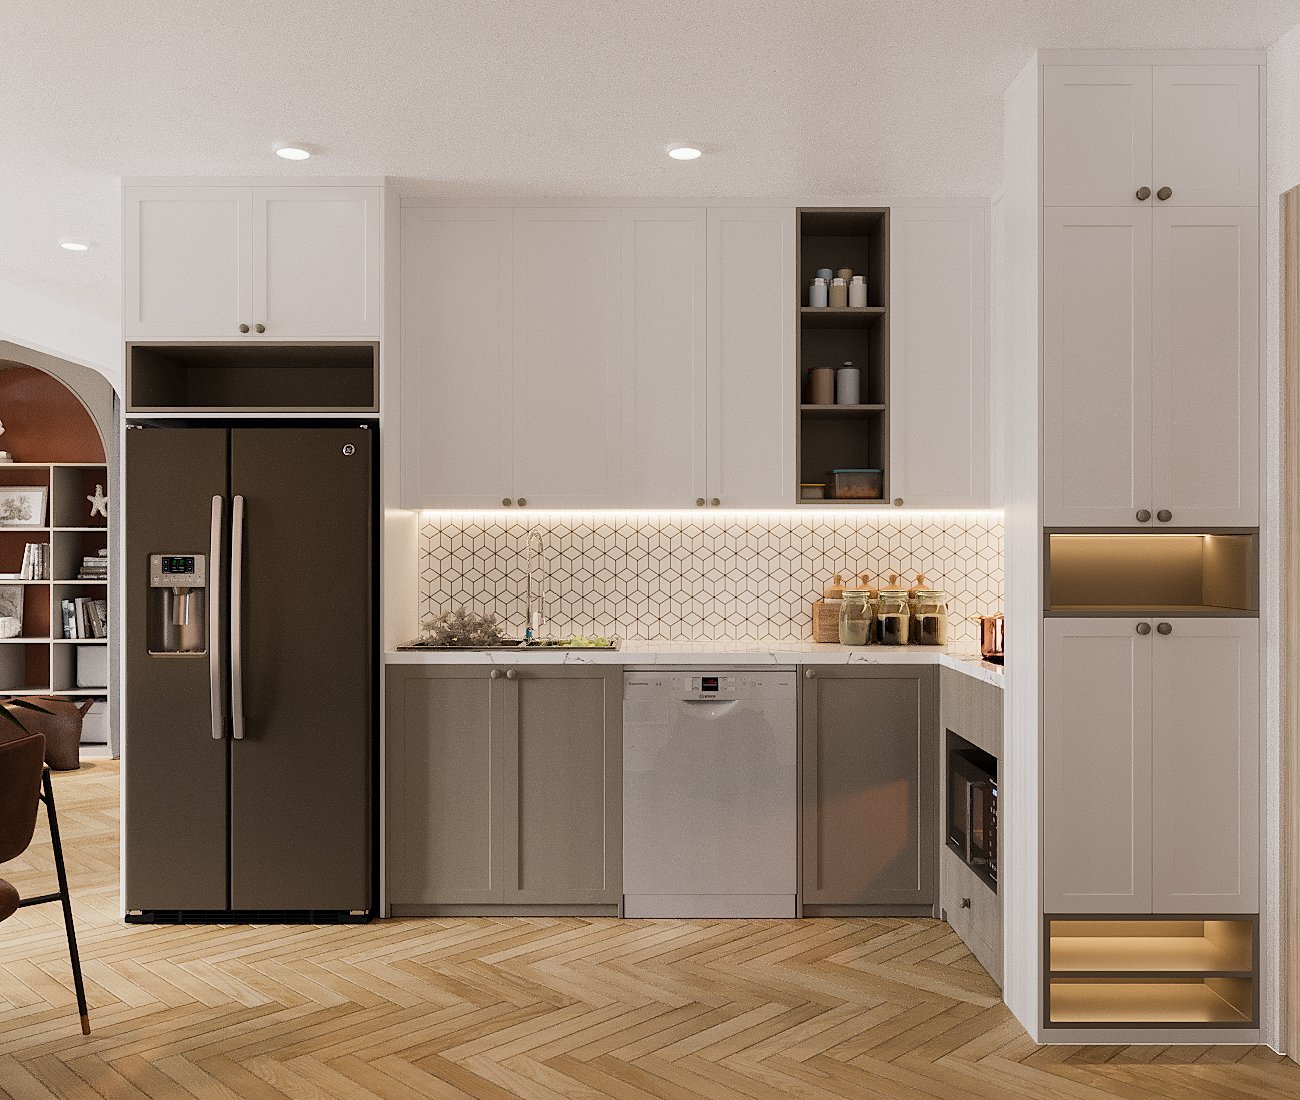 Hệ tủ bếp trên tông trắng tinh khôi như "tàng hình", tạo cảm giác thoáng rộng hơn. Tường chắn bếp ốp gạch men họa tiết hình học trang nhã, hiện đại.